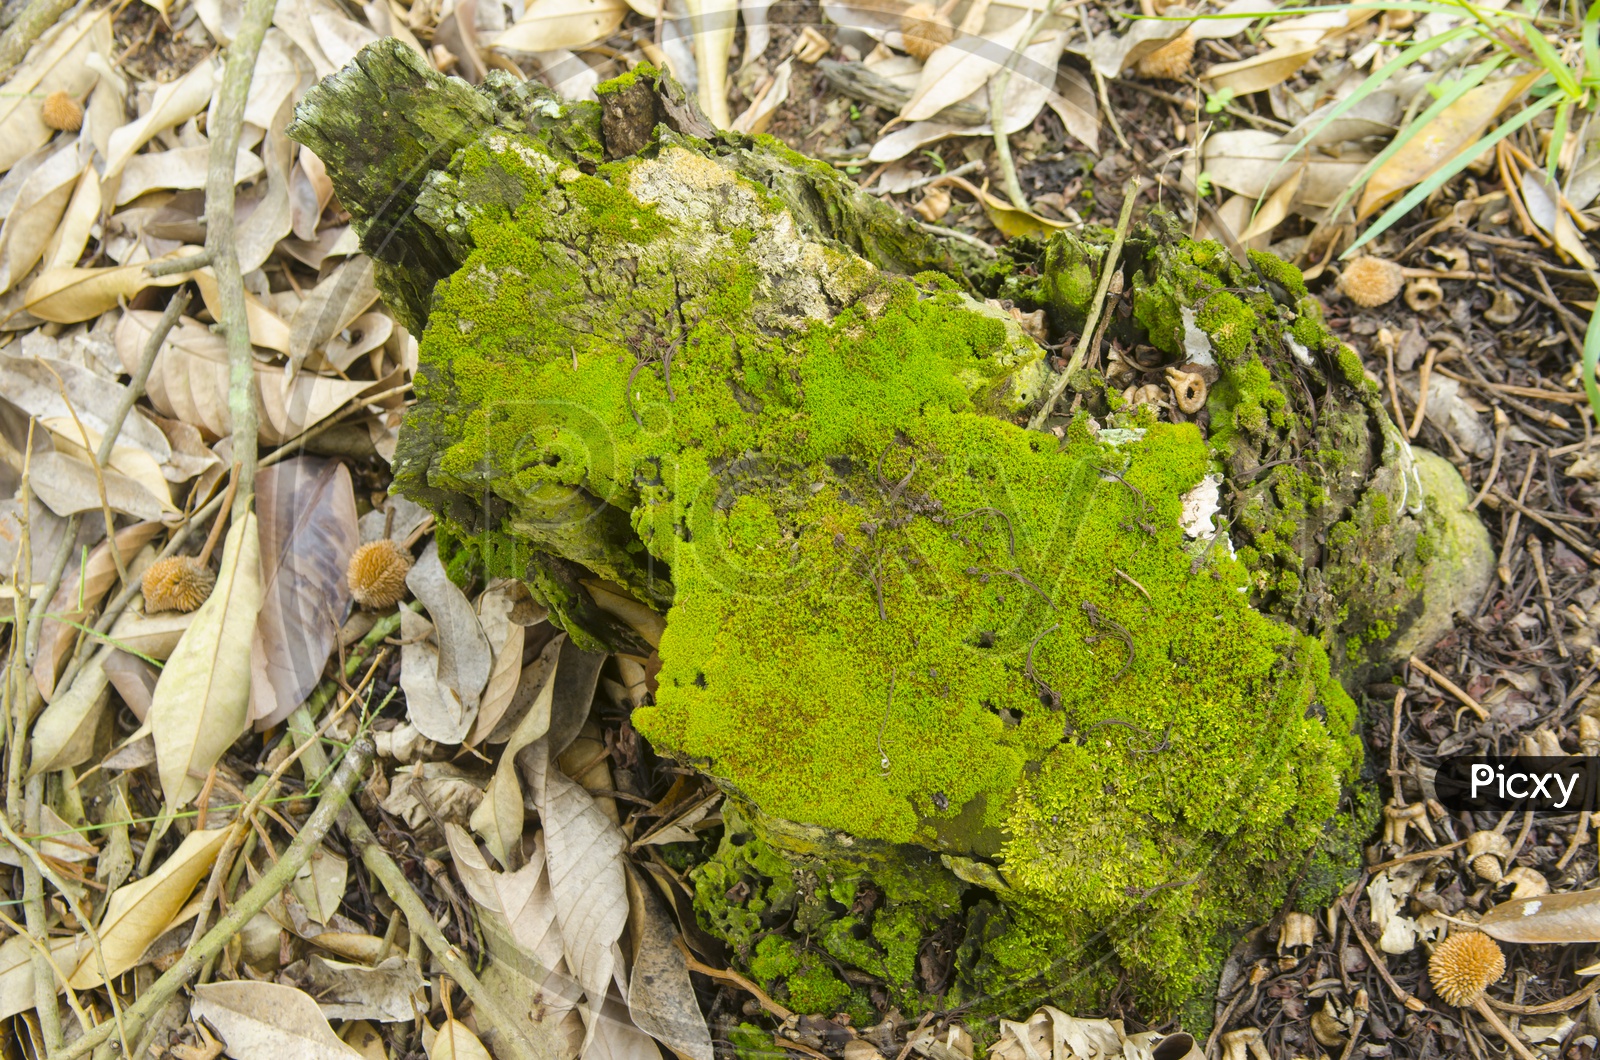 Green Algae On a Sedimentary Rock in Tropical Forest